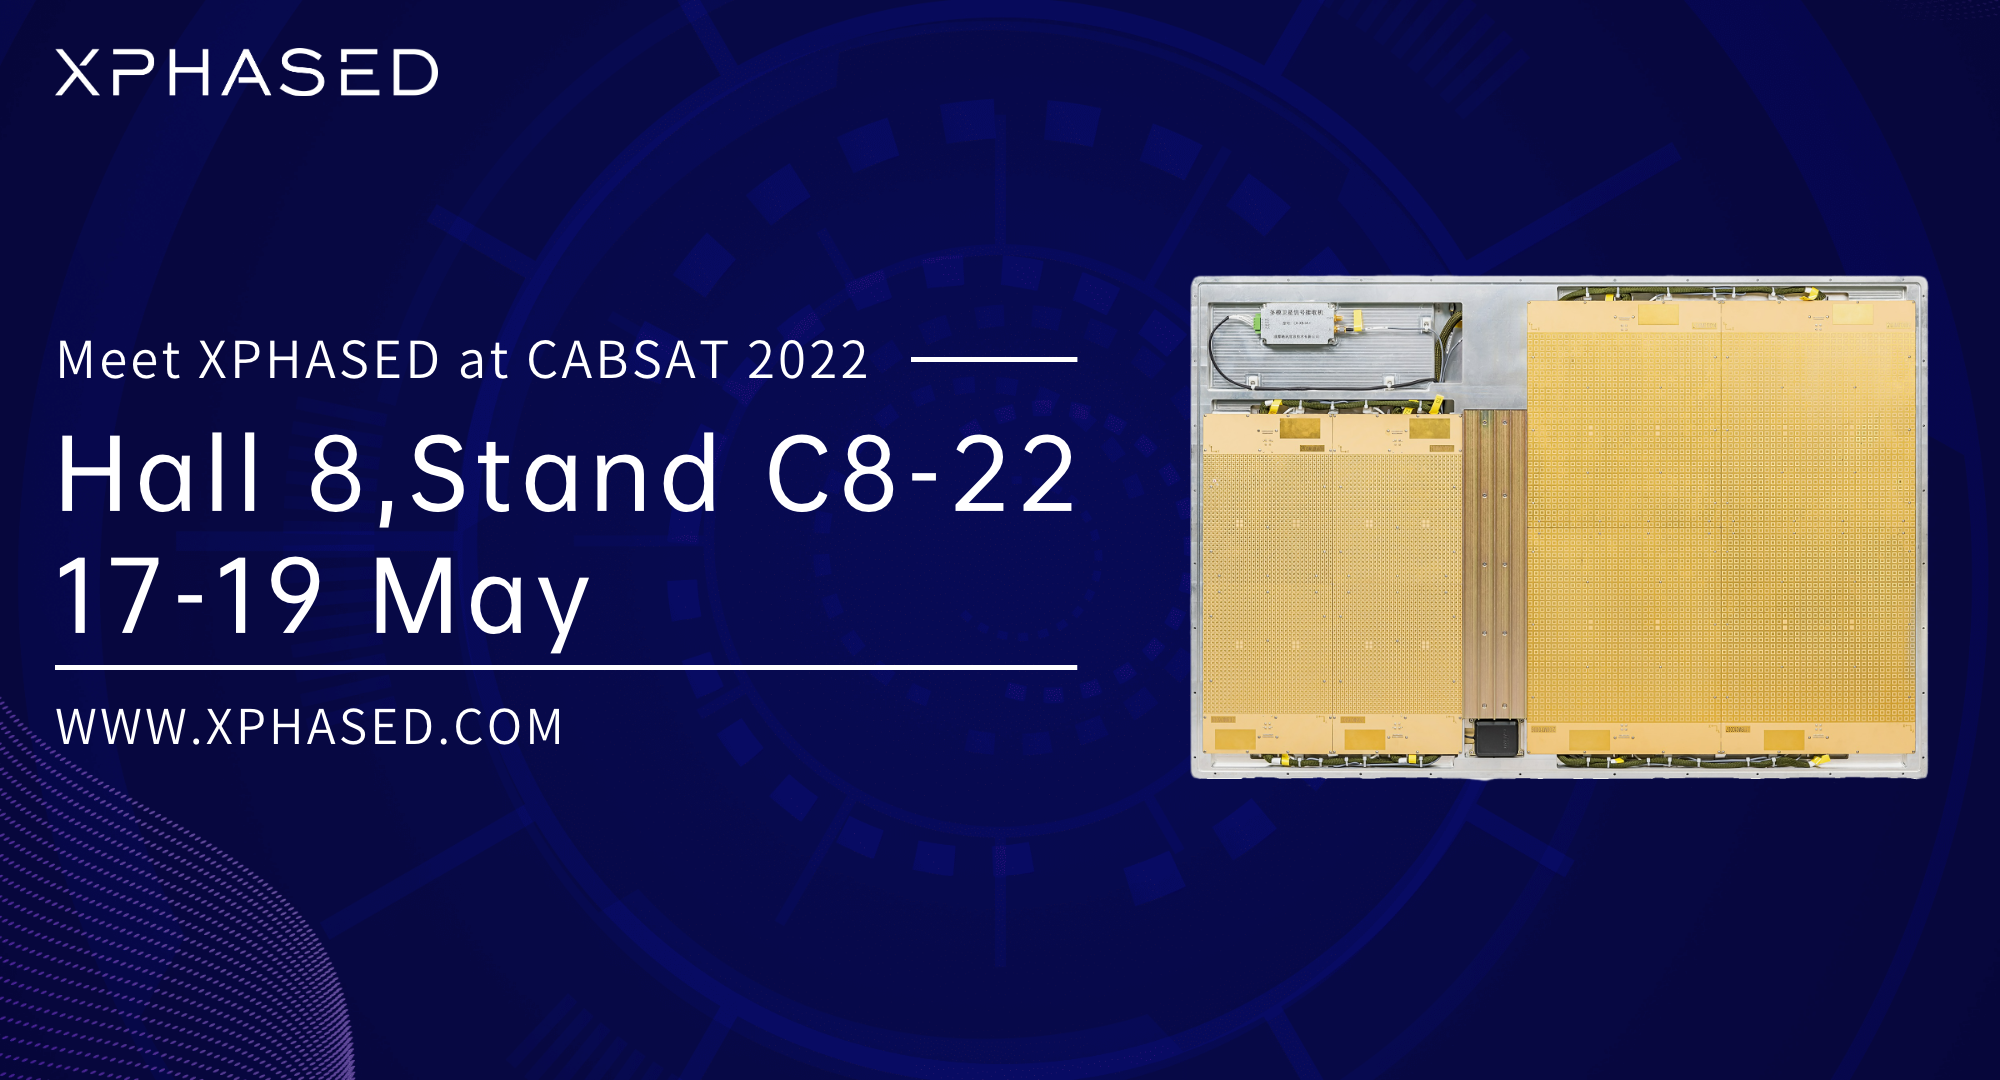 CABSAT 2022